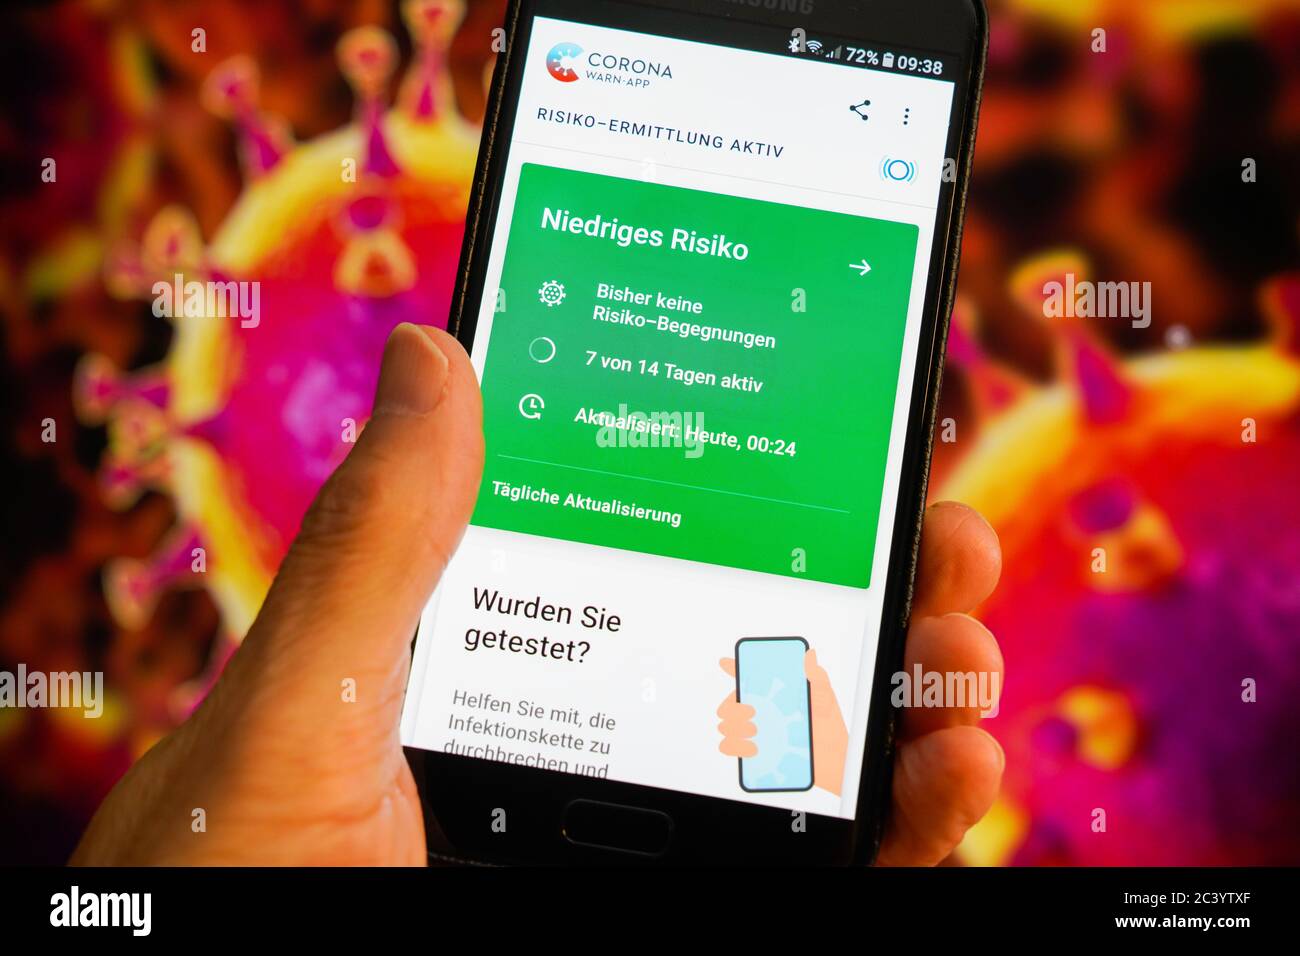 Die offizielle deutsche Corona-Warnungs-App auf einem Samsung-Smartphone ist seit dem 16. Juni 2020 verfügbar und zeigt eine mögliche Risikobegegnung mit koronainfizierten Personen auf. Foto von 23.06.2020. --- die offizielle deutsche Corona-Warn-App auf einem Samsung Smartphone, sie ist seit dem 16.6.2020 verfügbar und zeigt eine eventuelle Risikobegonung mit Coronainfizierten an. Photo vom 23.06.2020. Stockfoto